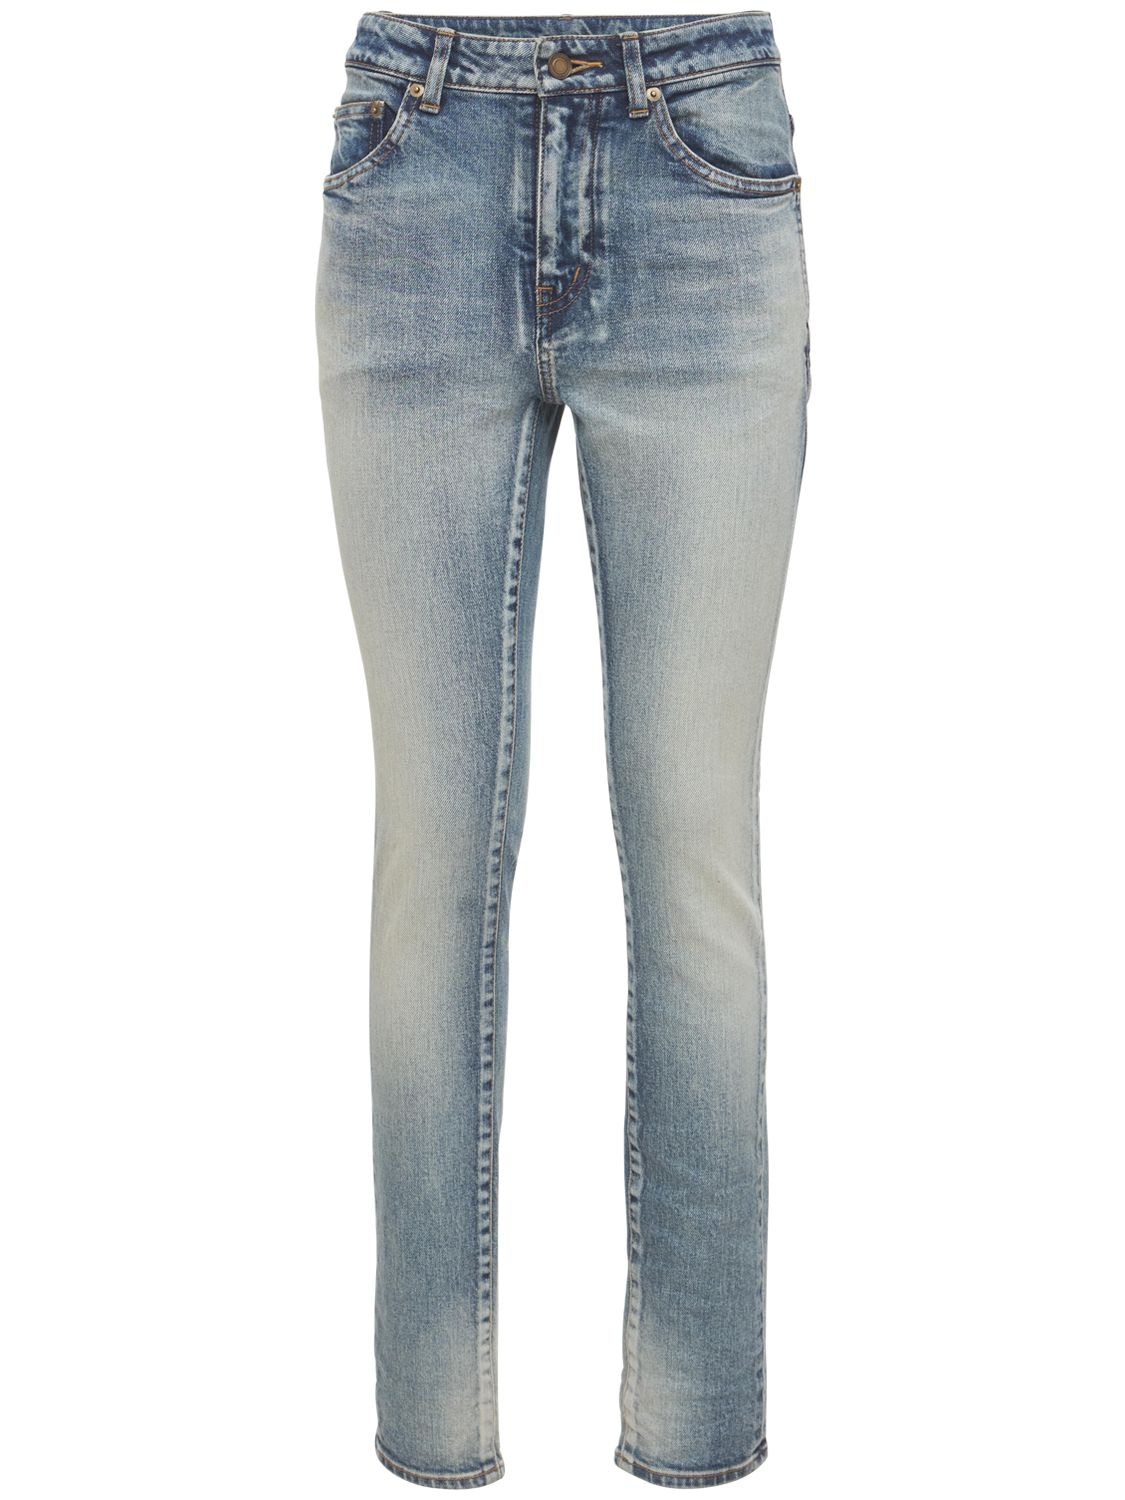 Saint Laurent Skinny Cotton Denim Jeans